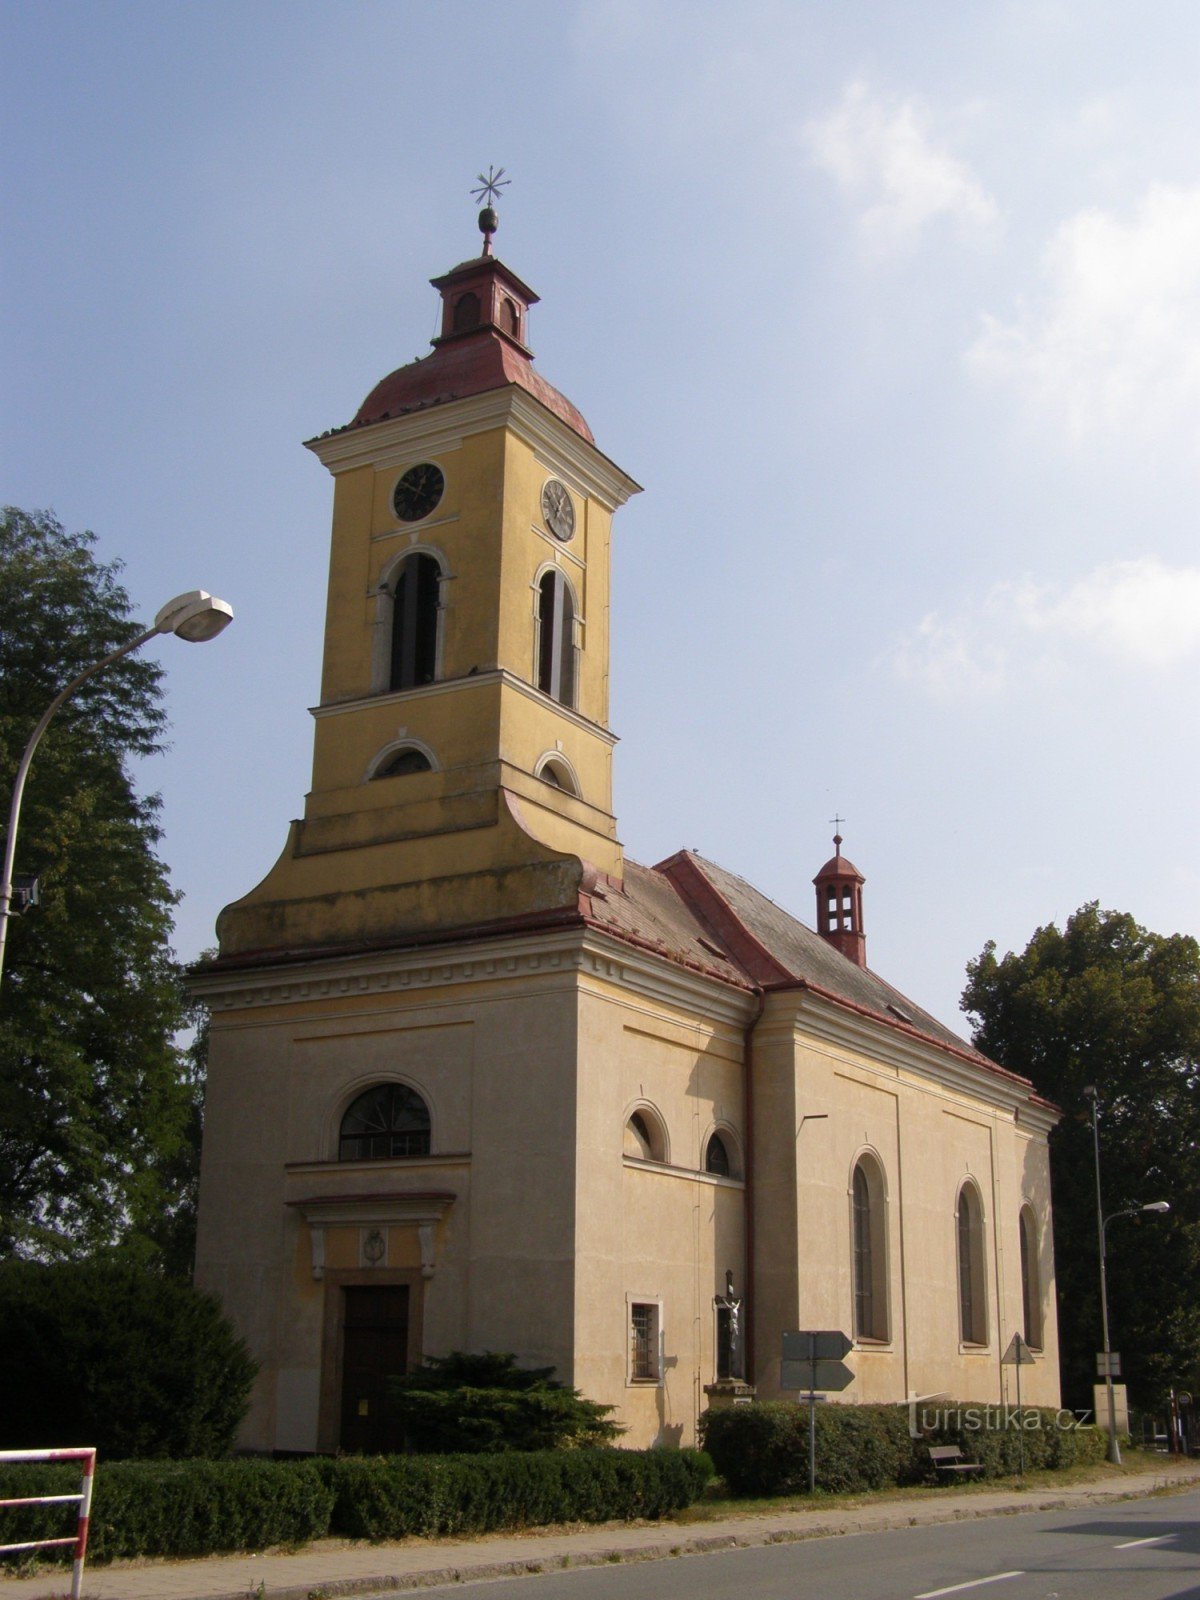 Štězery - Pyhän kirkko Mark